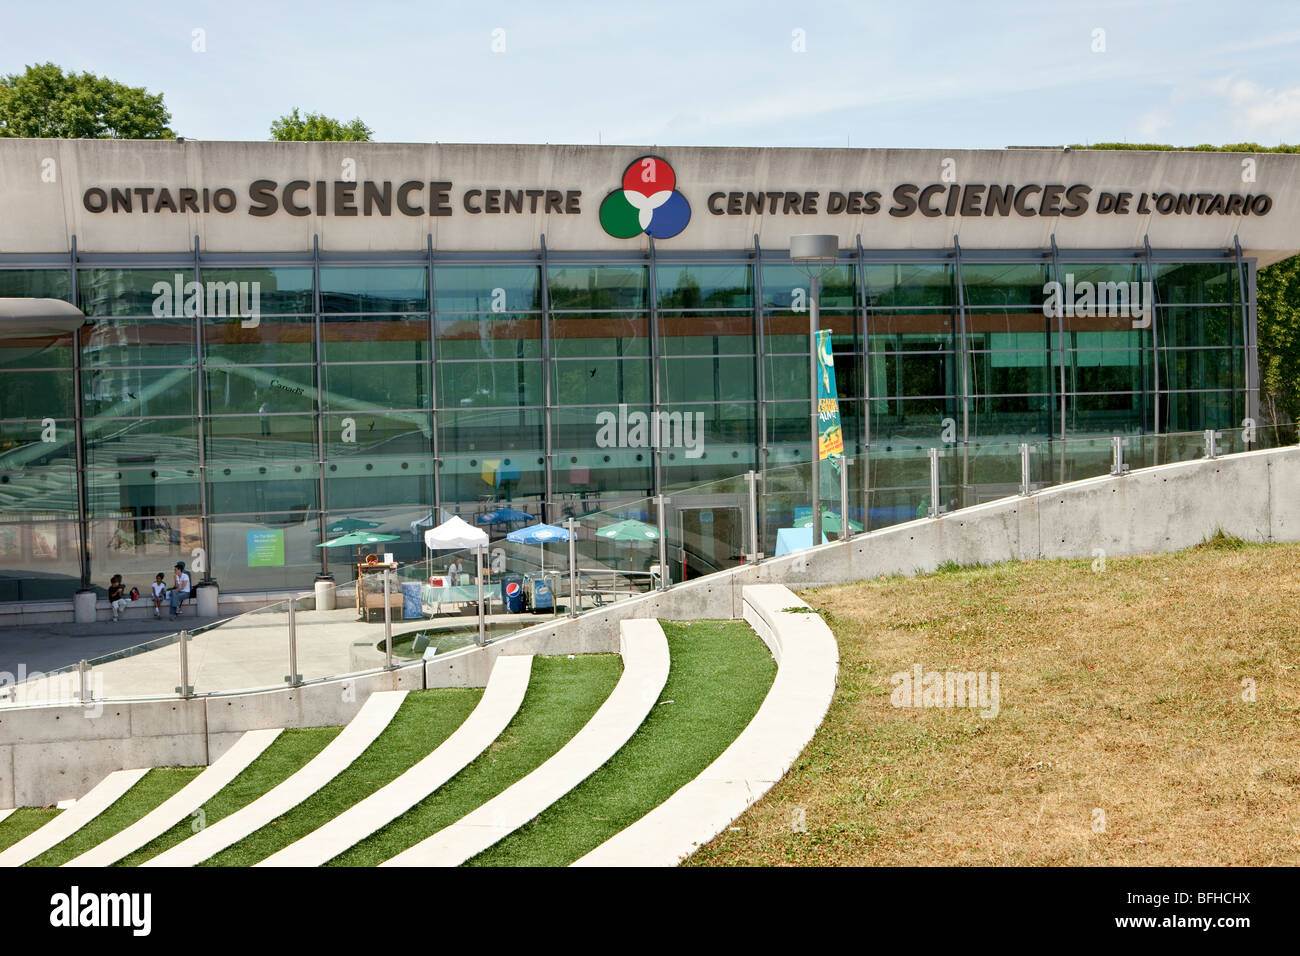 Ontario Science Centre, Toronto Stock Photo